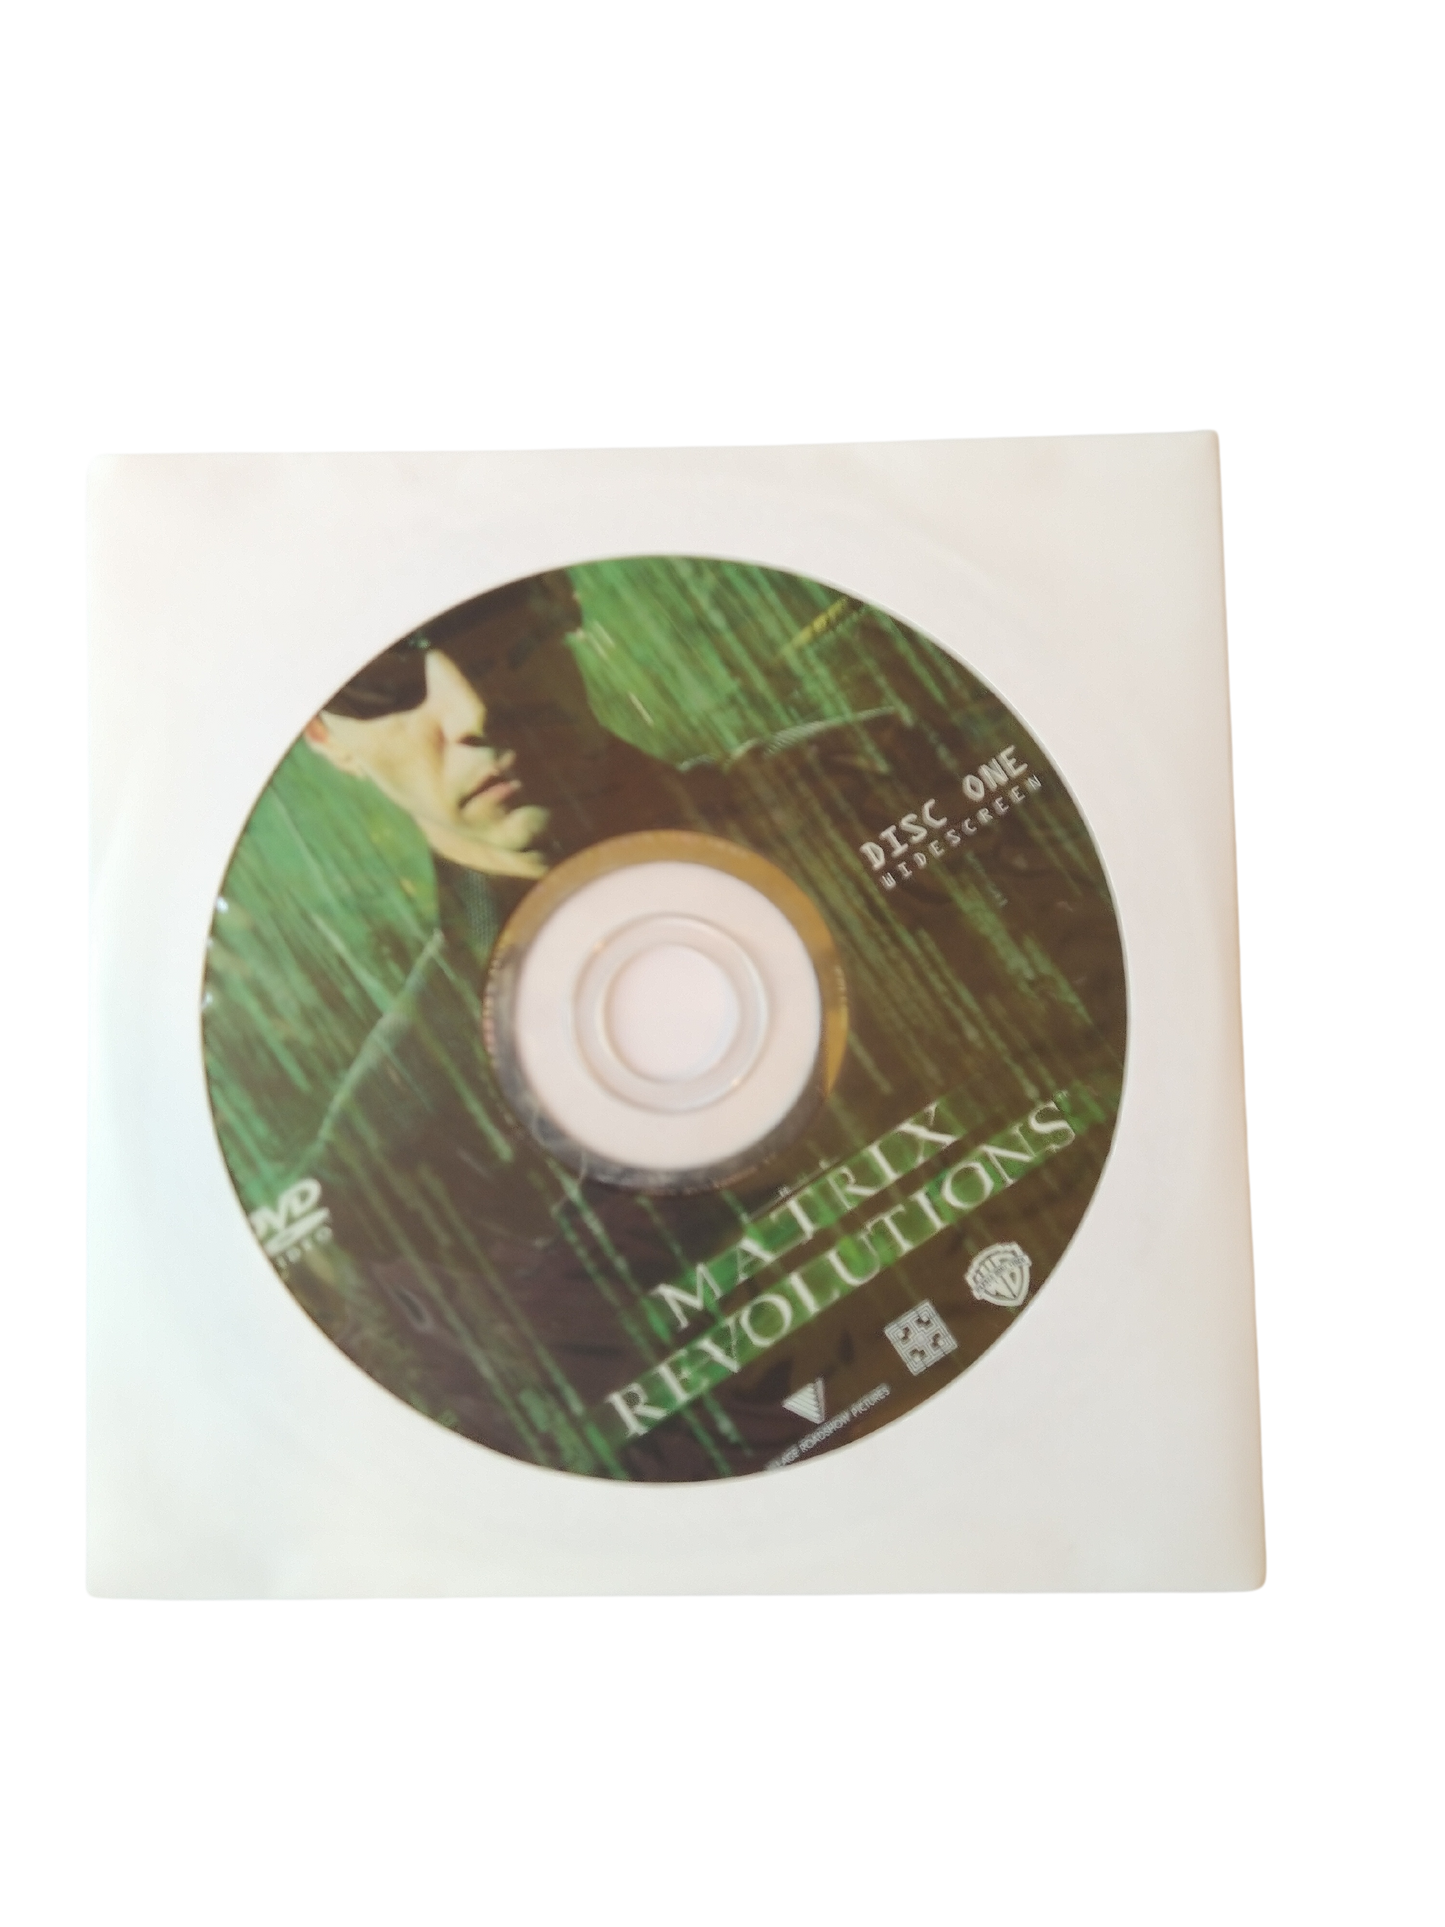 Matrix Revolutions - Widescreen Disc Only